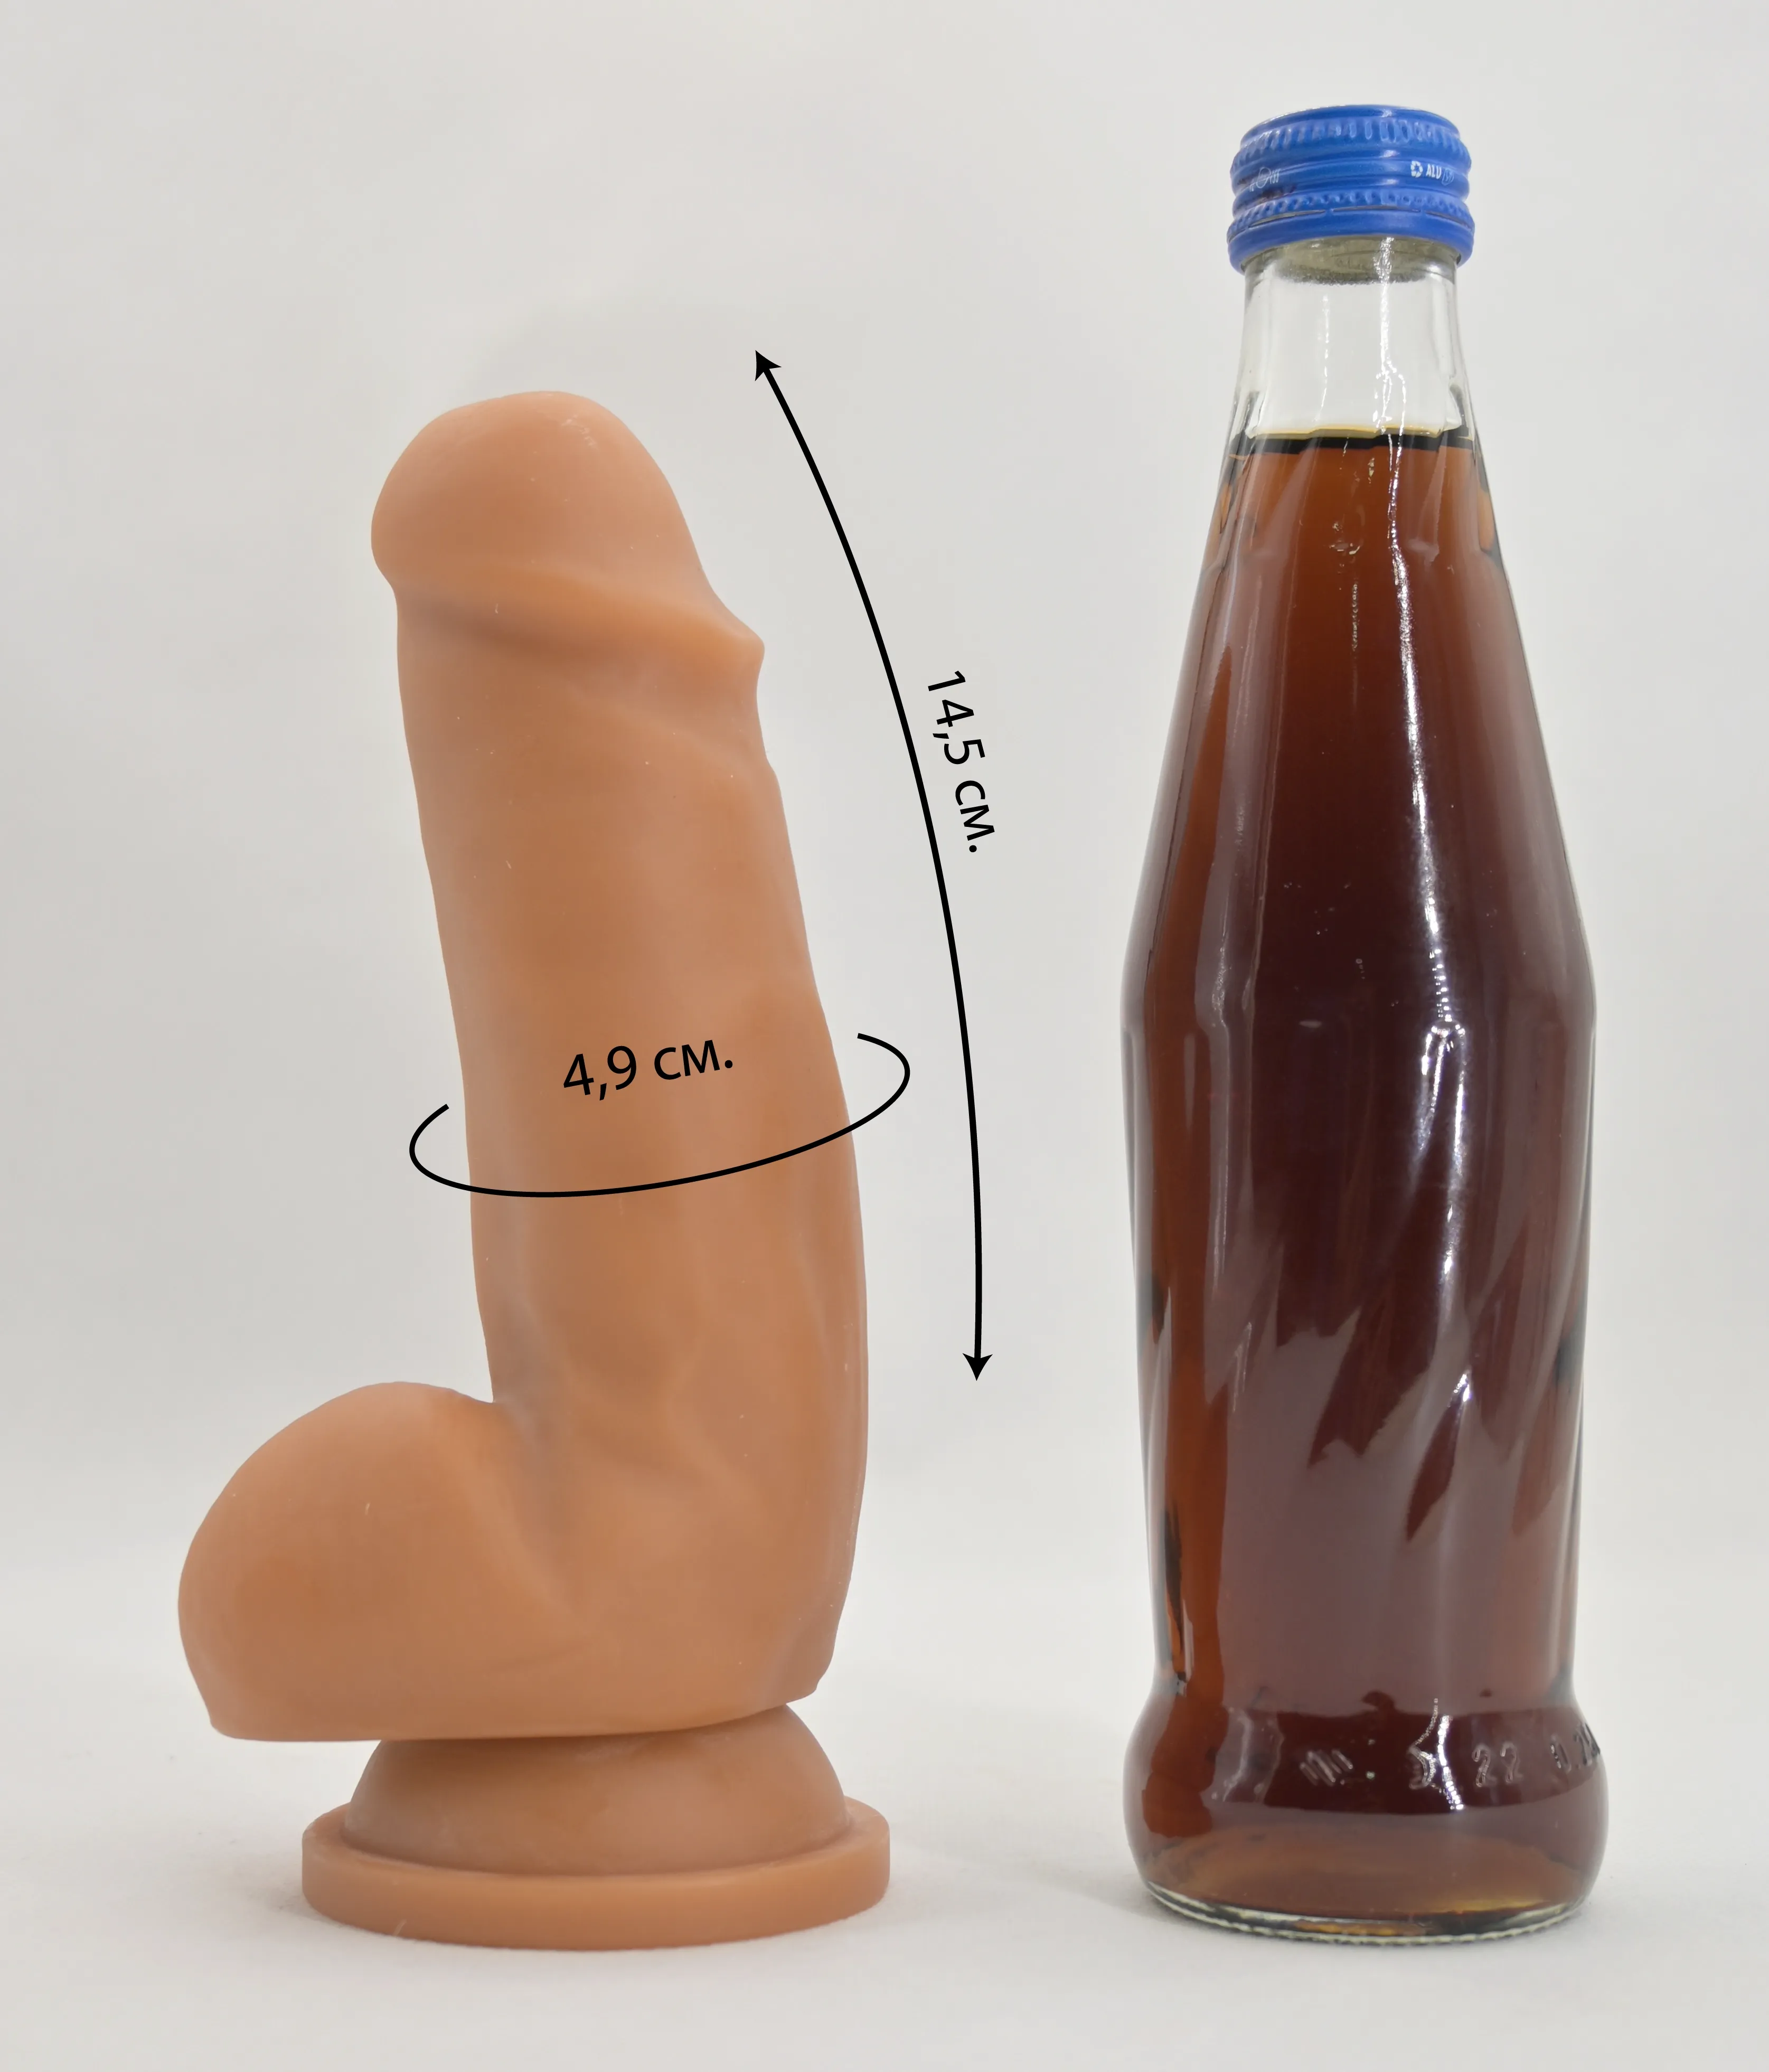 Размеры и сравнение дилдо Fashion Dude со стеклянной бутылкой пепси